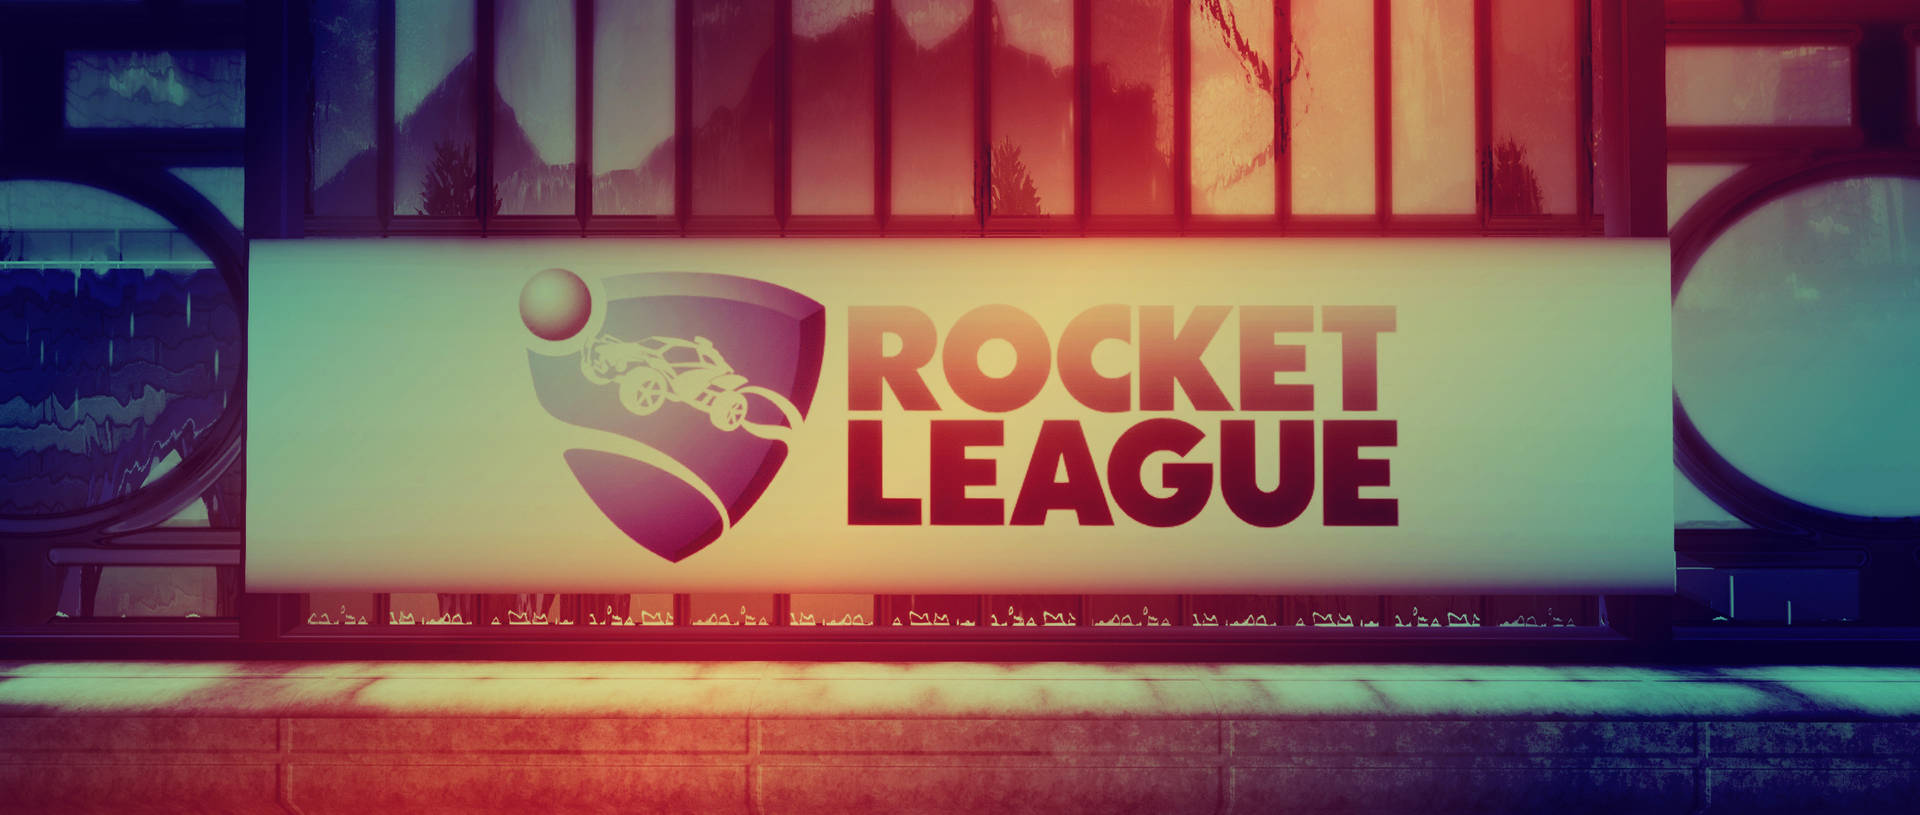 Rocket League Fanart Screen 2K Wallpaper